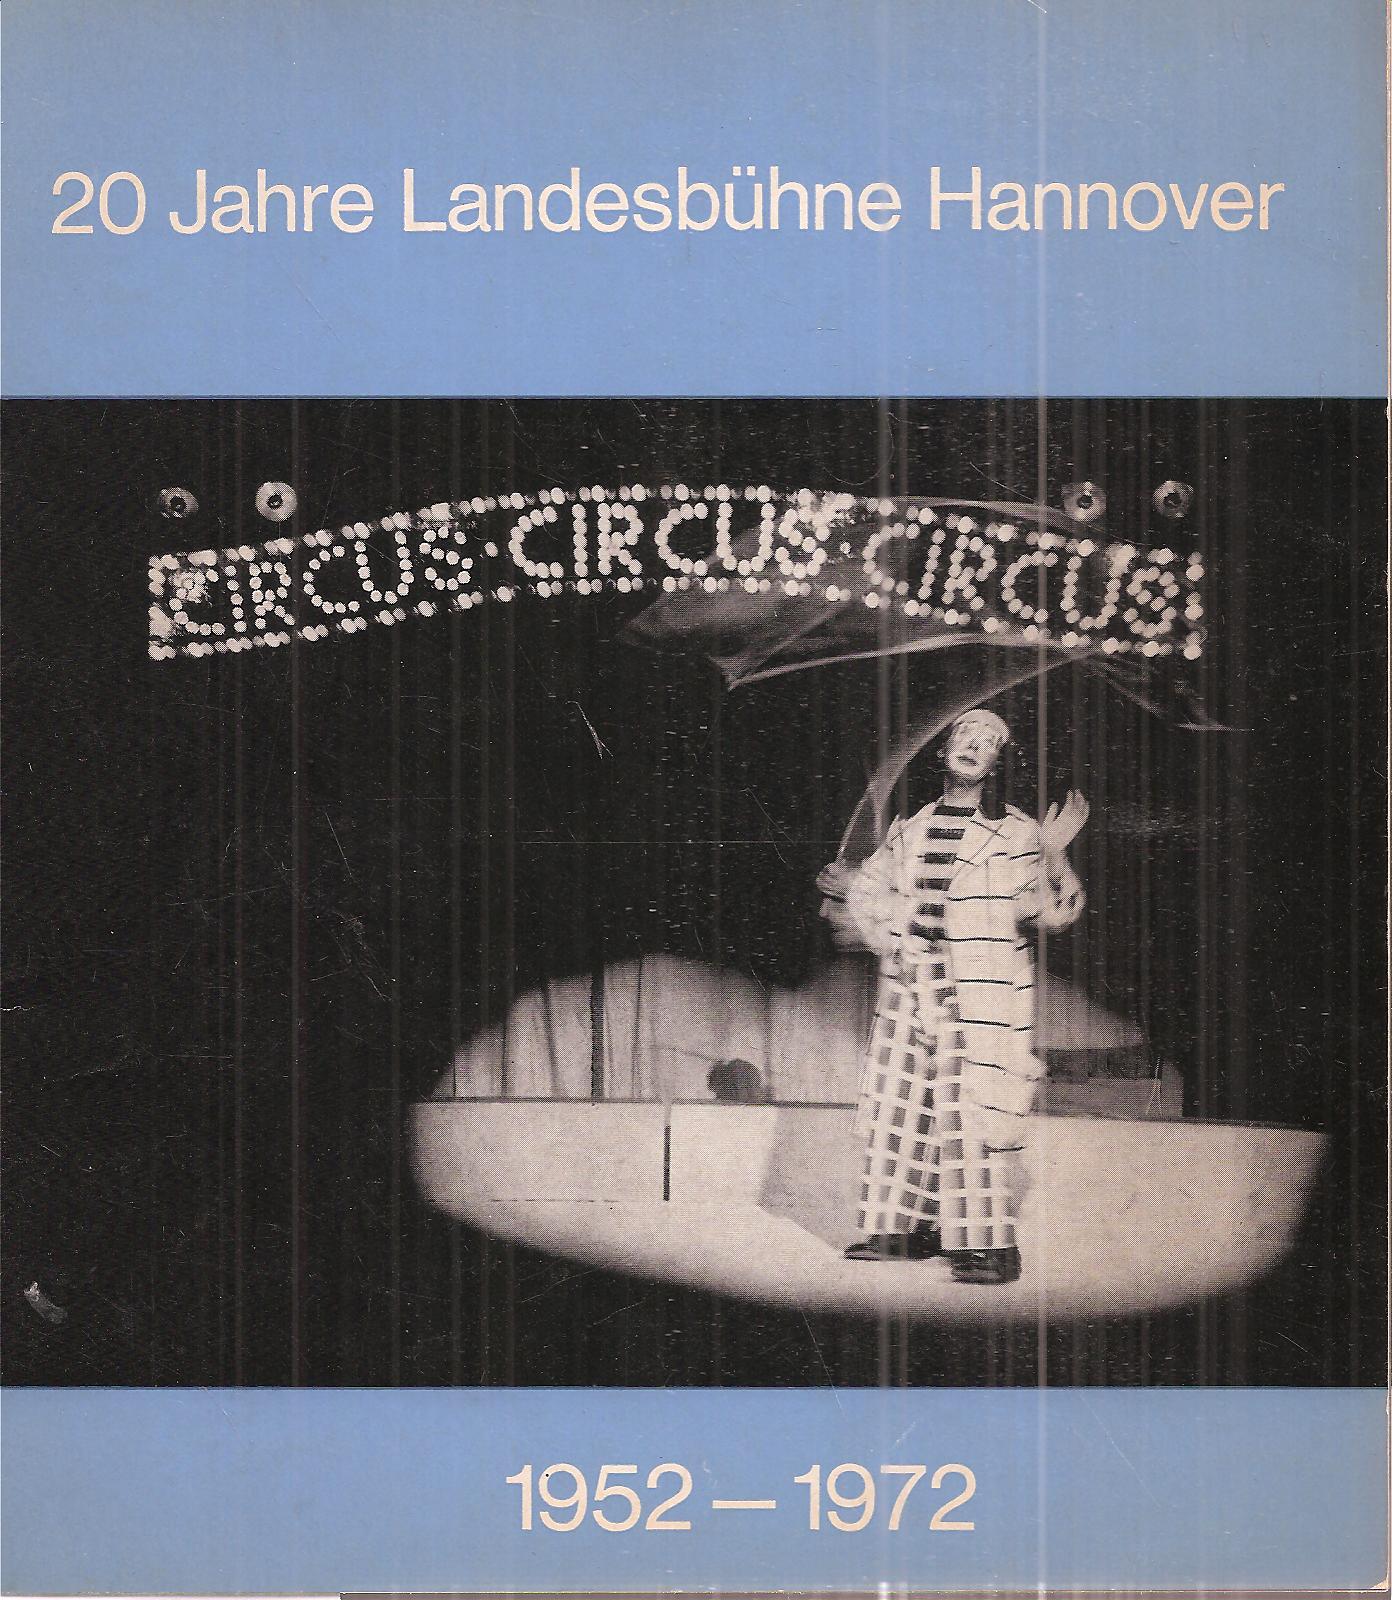 Landesbühne Hannover  20 Jahre Landesbühne Hannover 1952 - 1972 